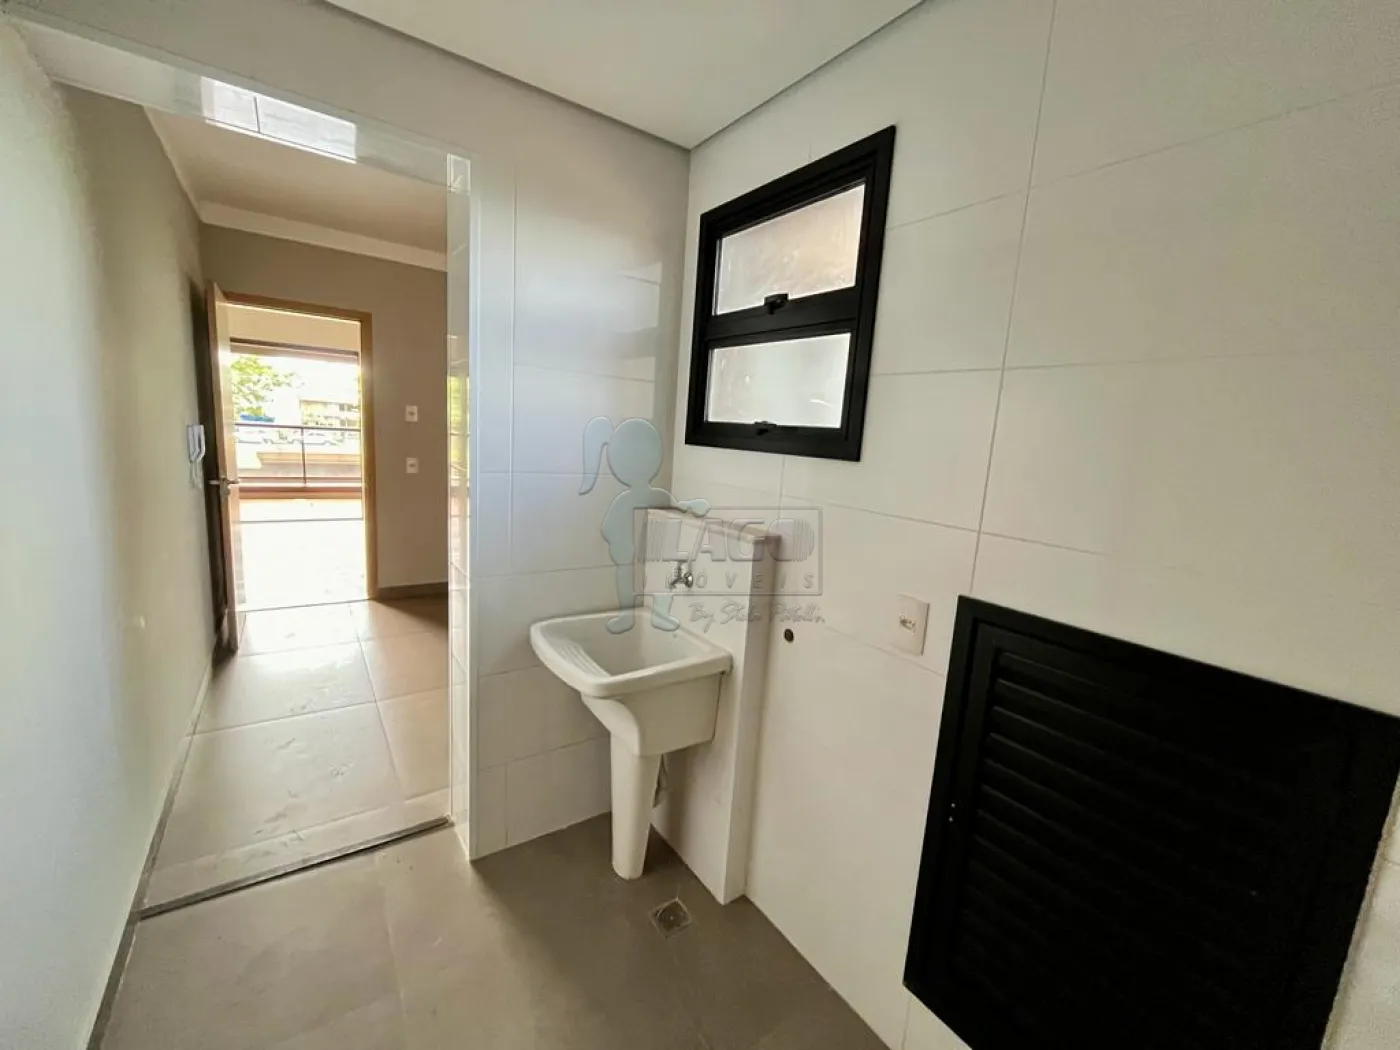 Comprar Apartamento / Padrão em Ribeirão Preto R$ 880.000,00 - Foto 11